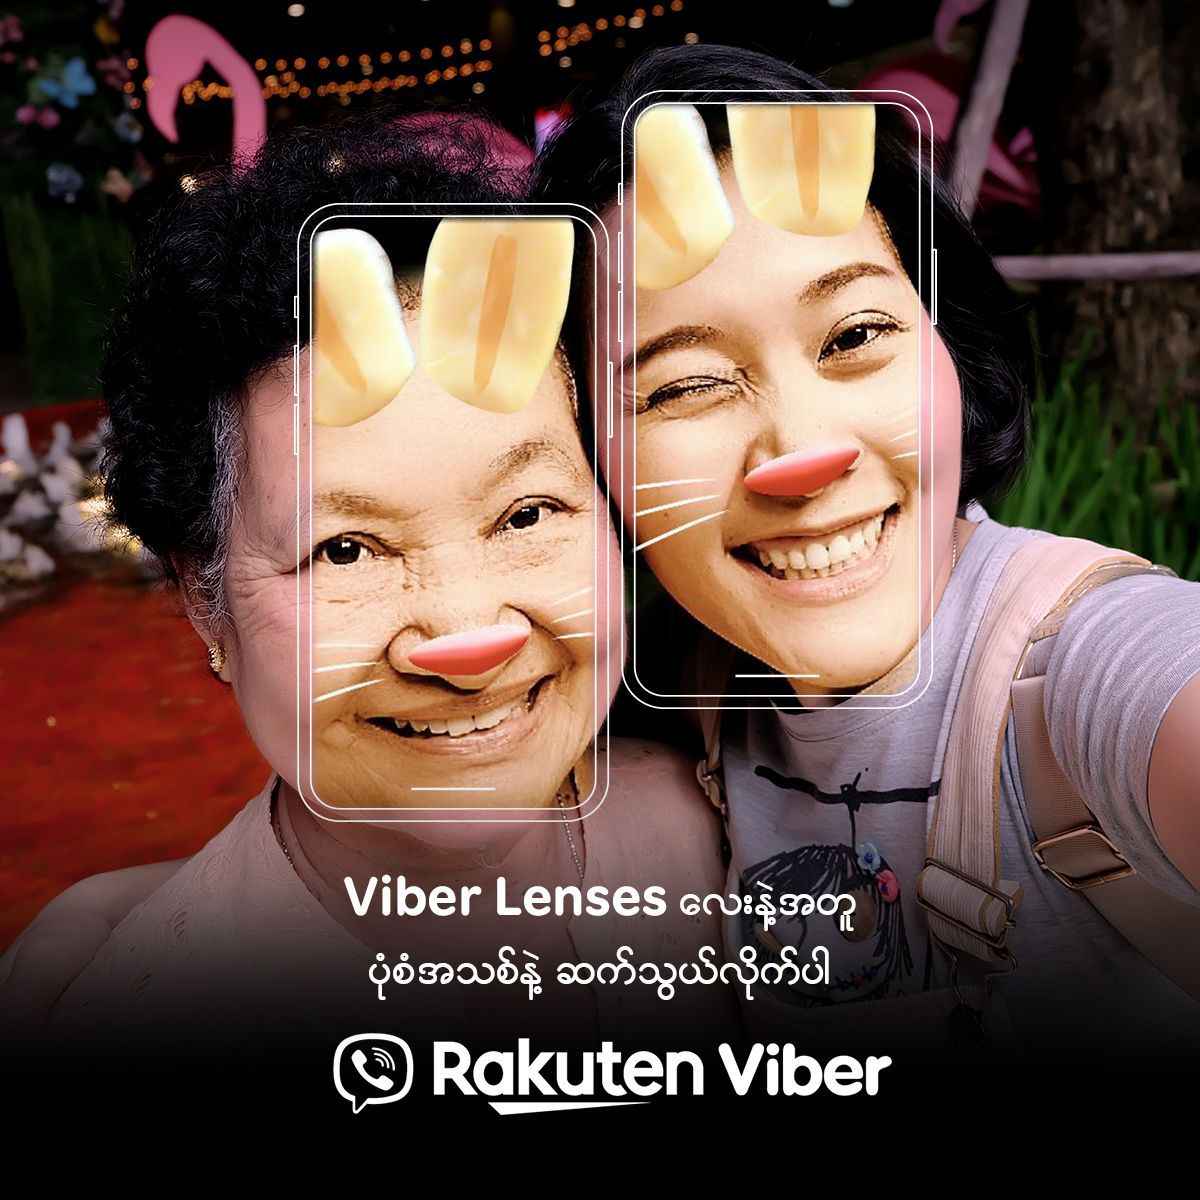 နောက်ဆုံးပေါ် Viber Lens များကို ခံစားနိုင်ပြီပြည်တွင်းကျွမ်းကျင်ပညာရှင်များနှင့် ပူးပေါင်းဖန်တီးထားသည့် AR Lenses များအား Rakuten Viber မှ စတင်မိတ်ဆက်